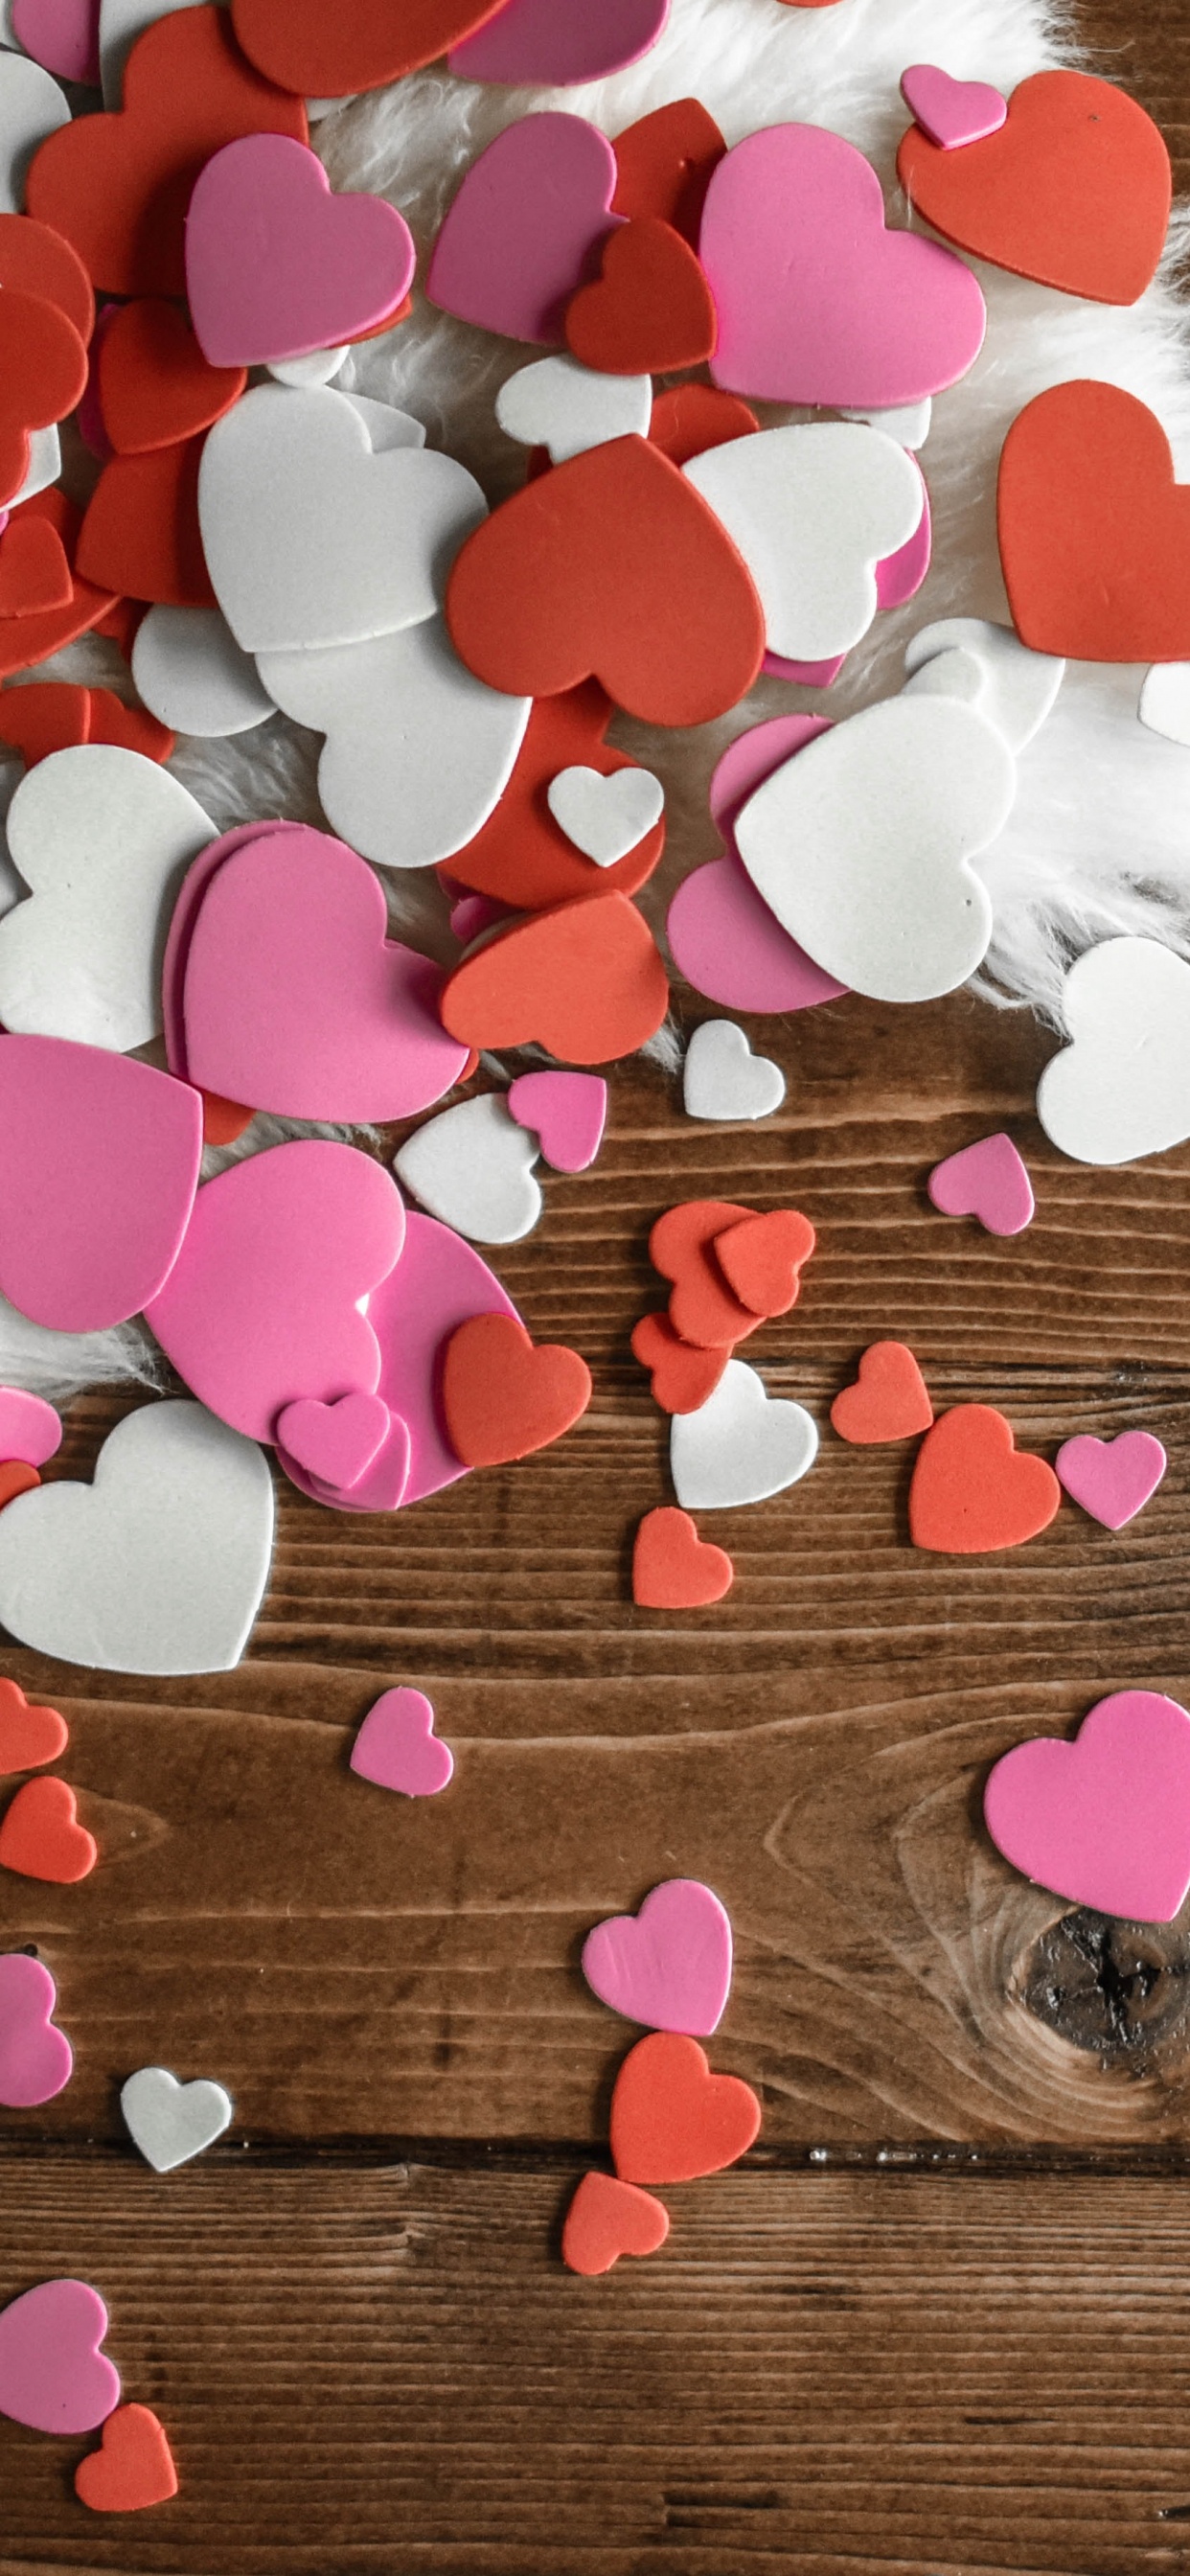 礼物, 心脏, 粉红色, 木, 爱情 壁纸 1242x2688 允许